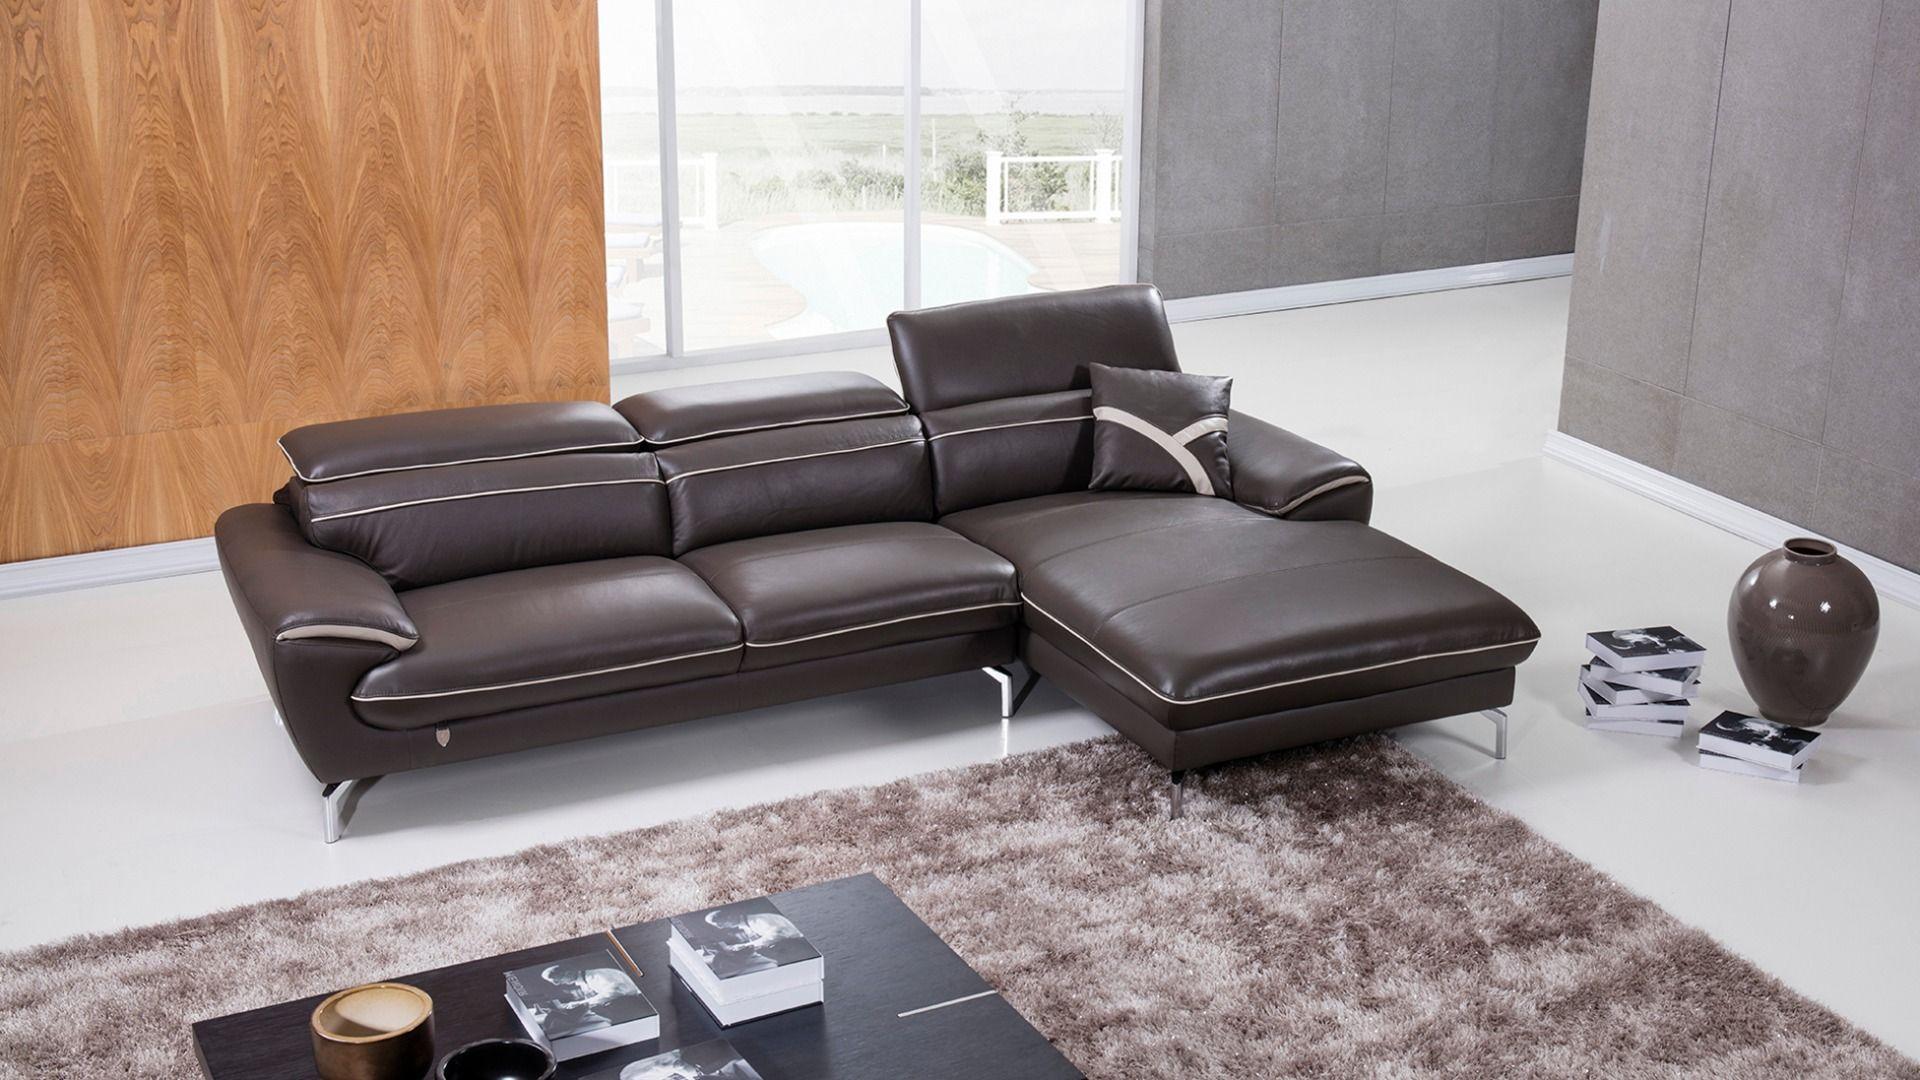 Contemporary, Modern Sectional Sofa EK-L040-TPE.LG EK-L040R-TPE.LG in Gray Italian Leather